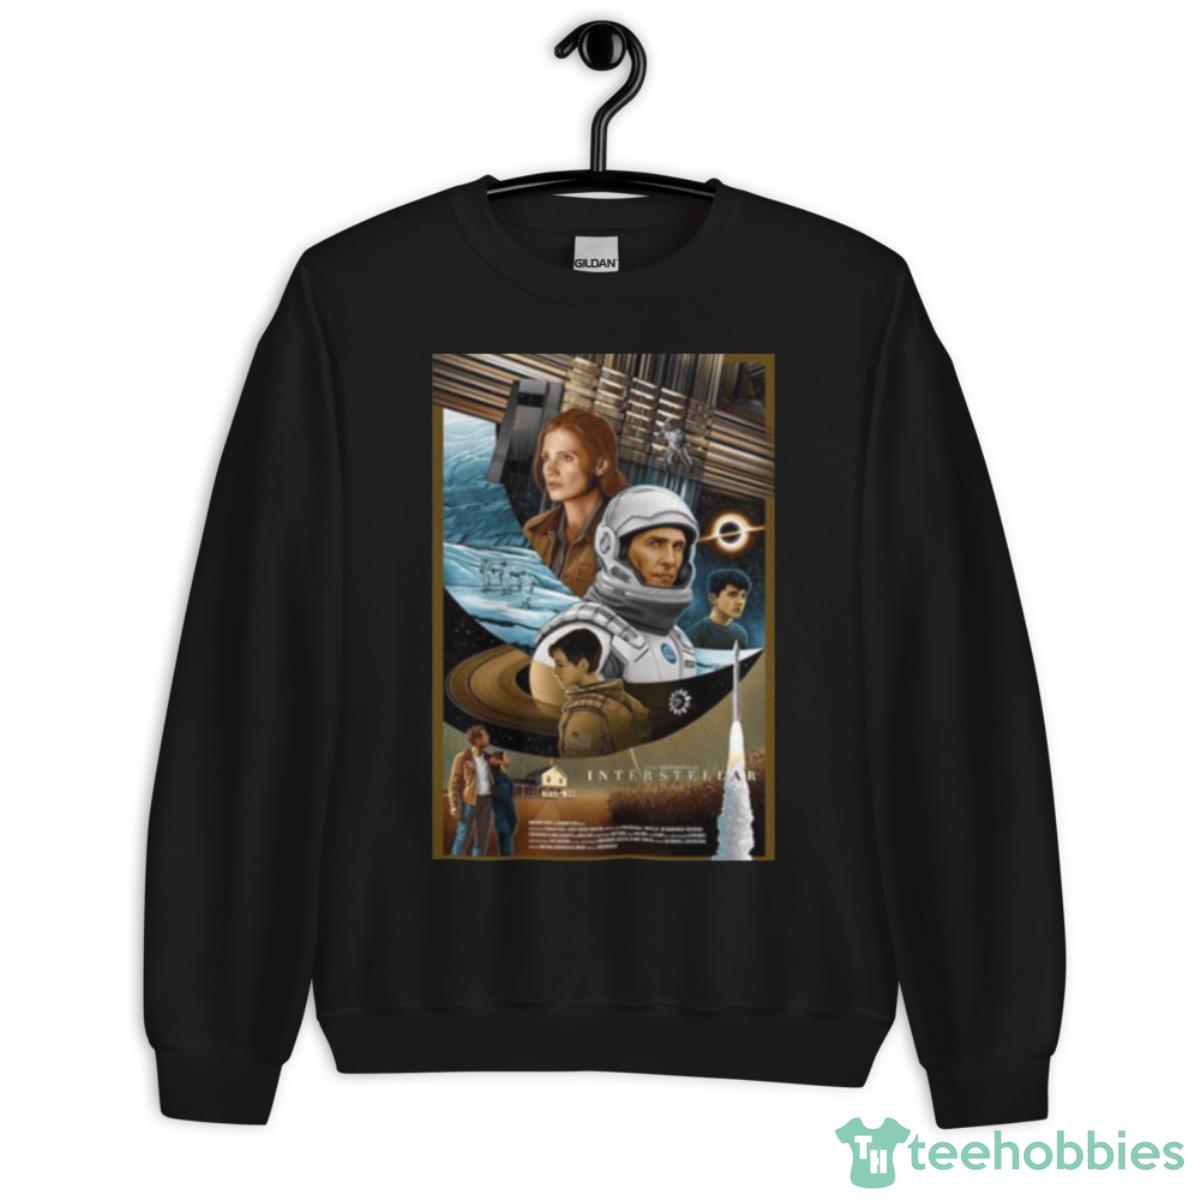 Best Space Movie Interstellar Shirt - Unisex Crewneck Sweatshirt